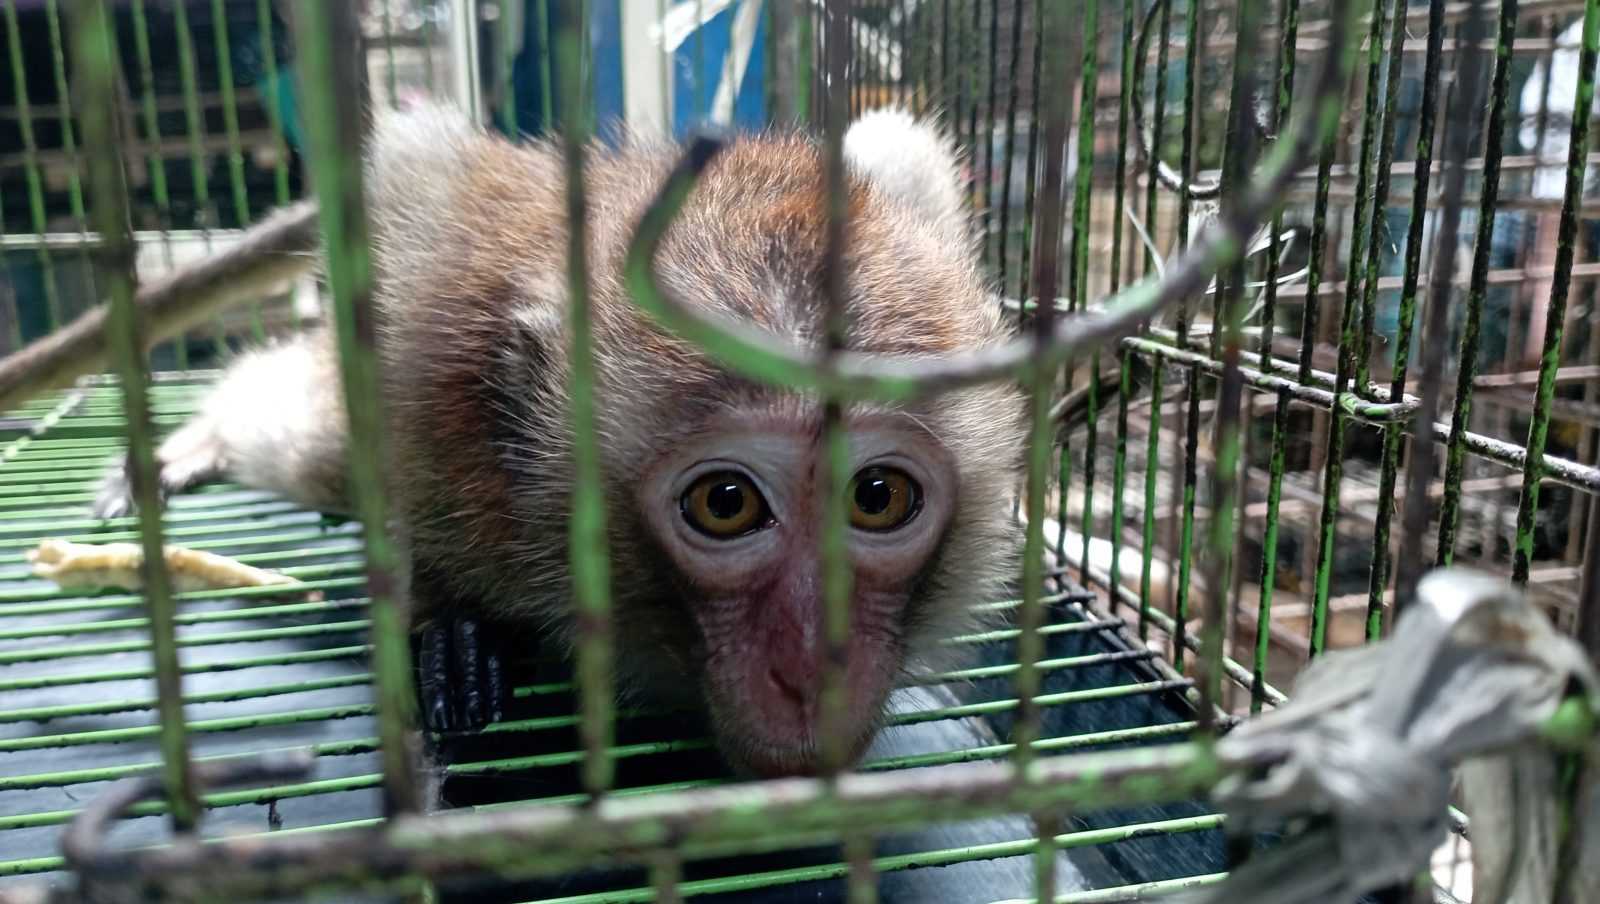 Potret monyet ekor panjang di balik jeruji. | Foto: Bayu Nanda/Garda Animalia